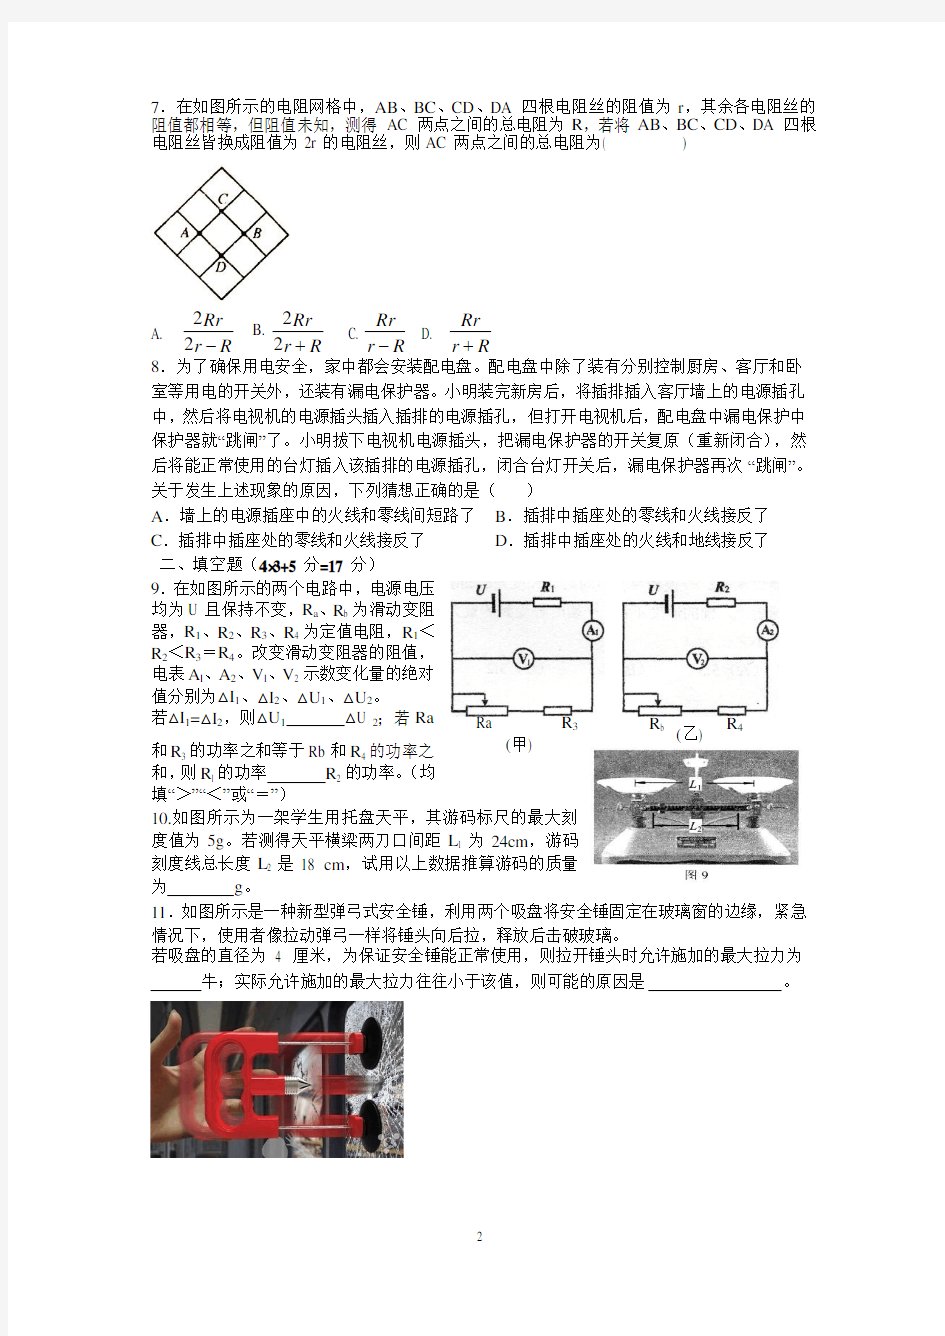 2019年湖北省黄冈中学理科实验班预录考试物理模拟试题